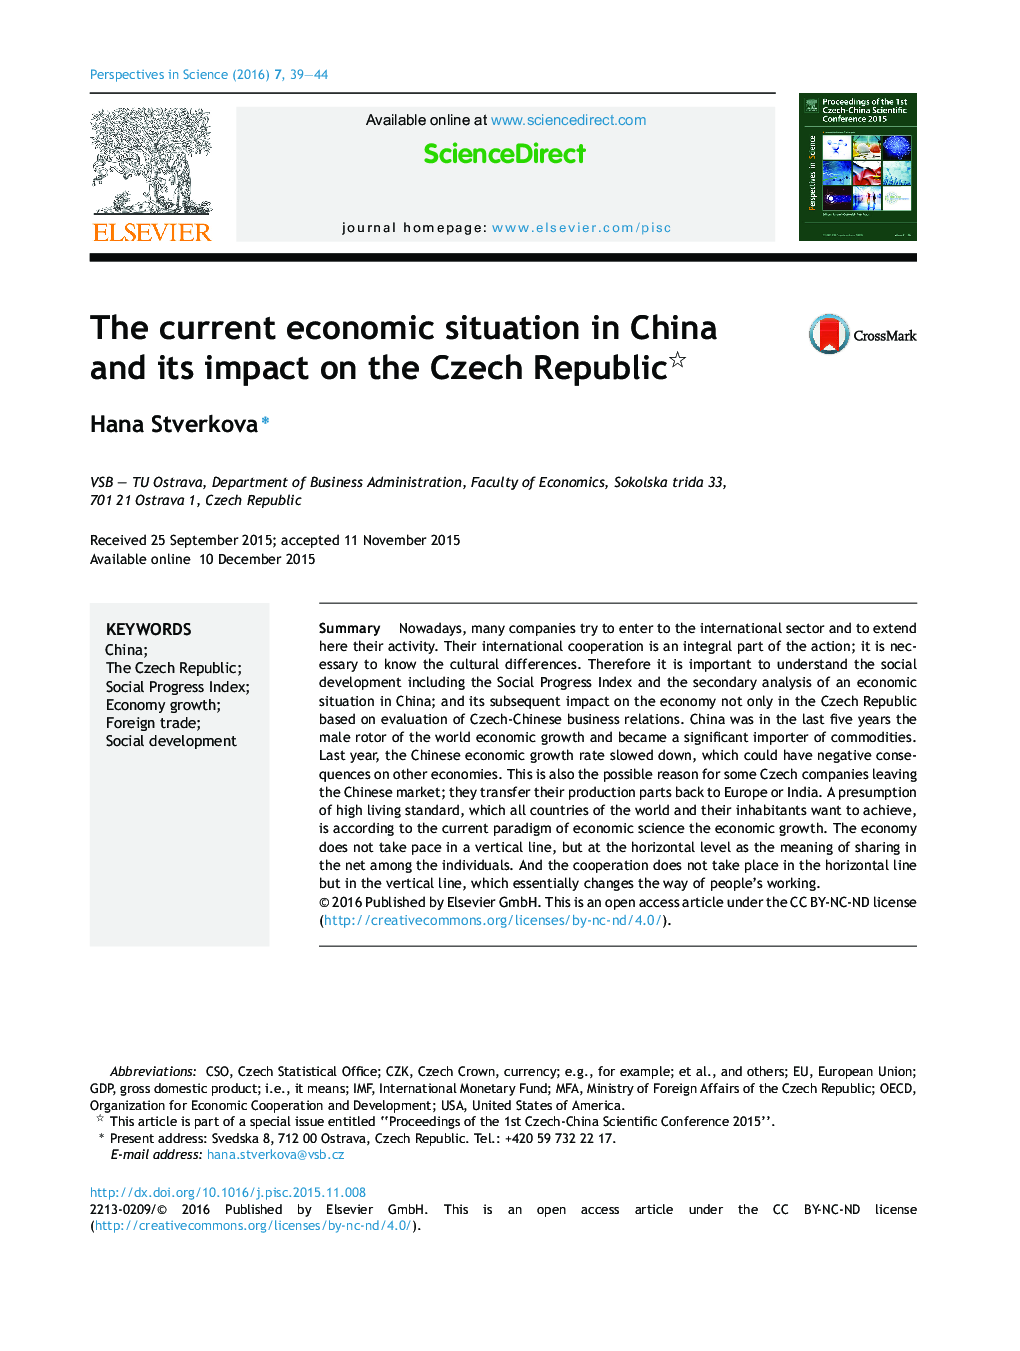 وضعیت اقتصادی کنونی در چین و تاثیر آن بر جمهوری چک